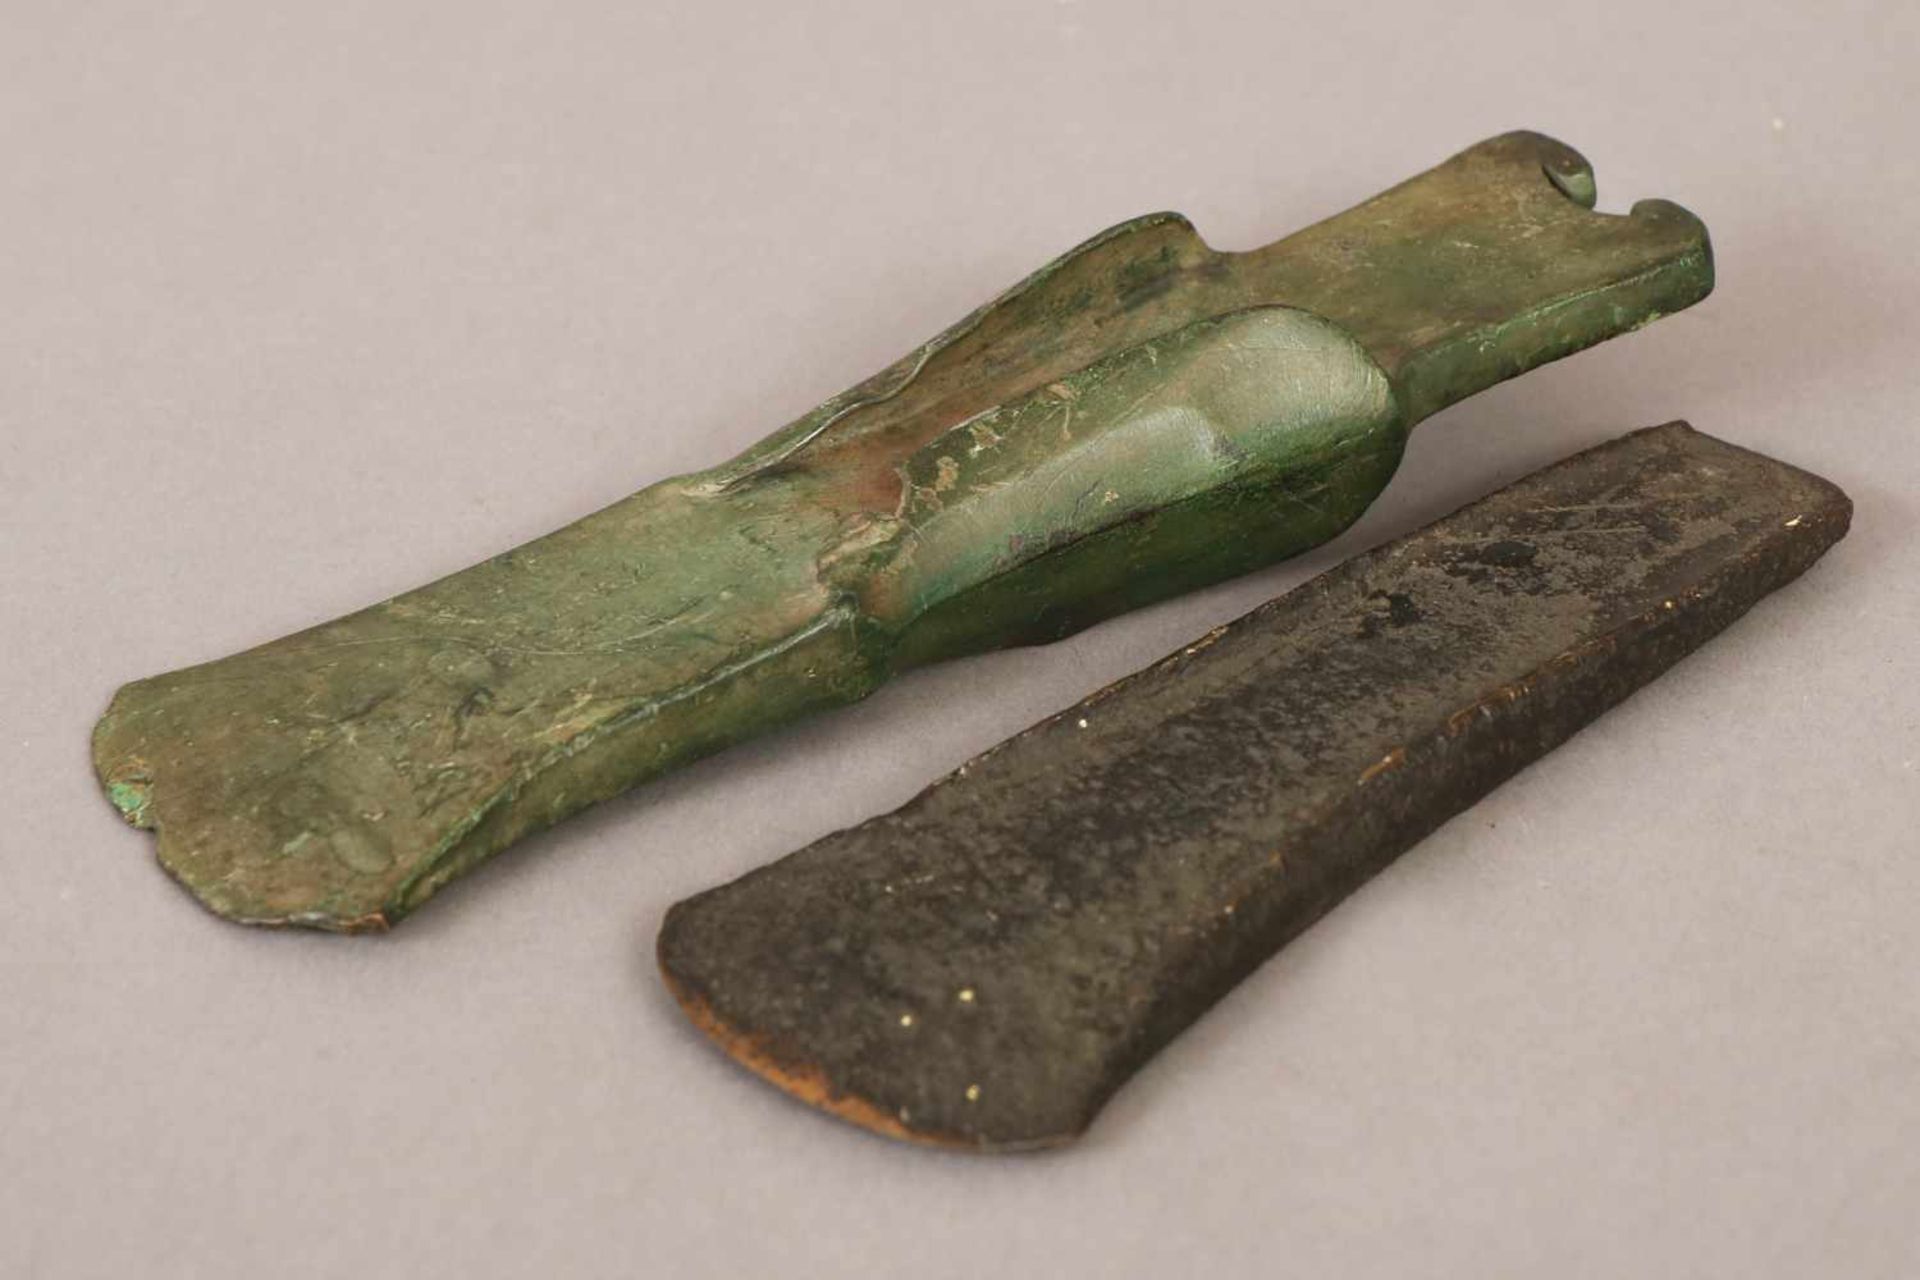 2 antike BeileBronze bzw. Eisen, geschmiedet, vermutlich römisch, keilförmig, L 16cm bzw. 18,5cm (